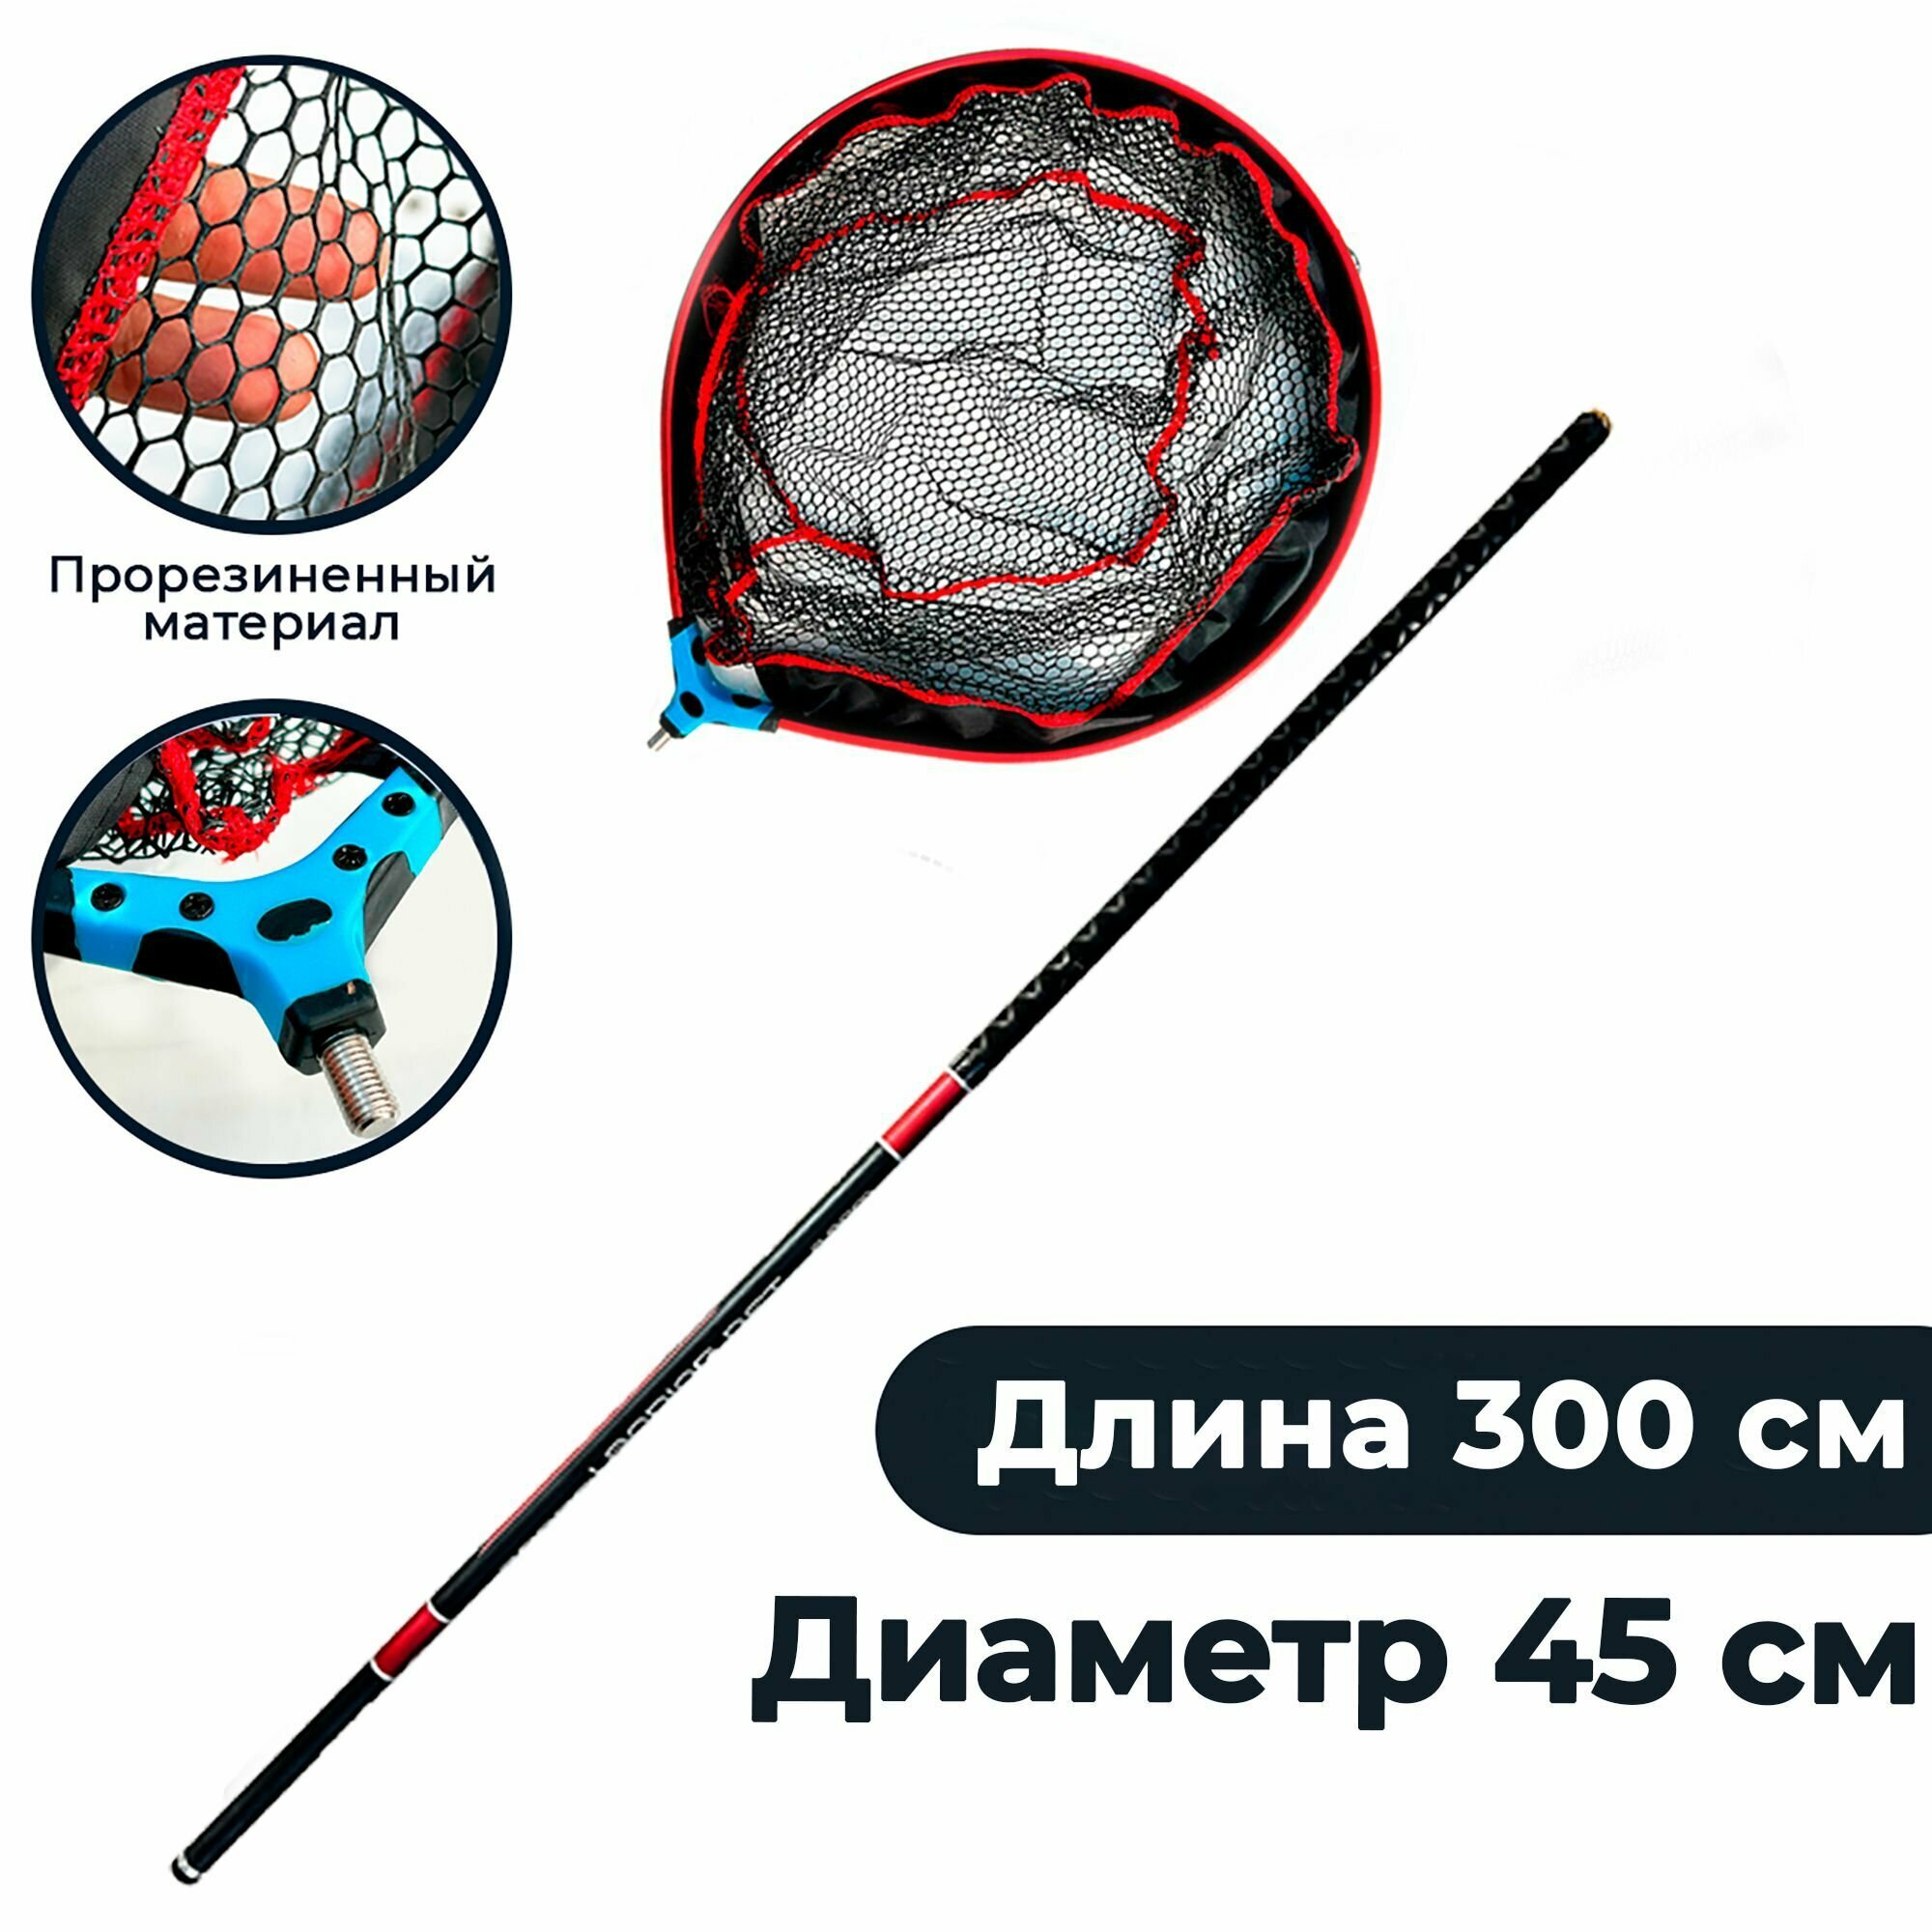 Подсак карповый голова 45 см с телескопической ручкой карбон 3 метра